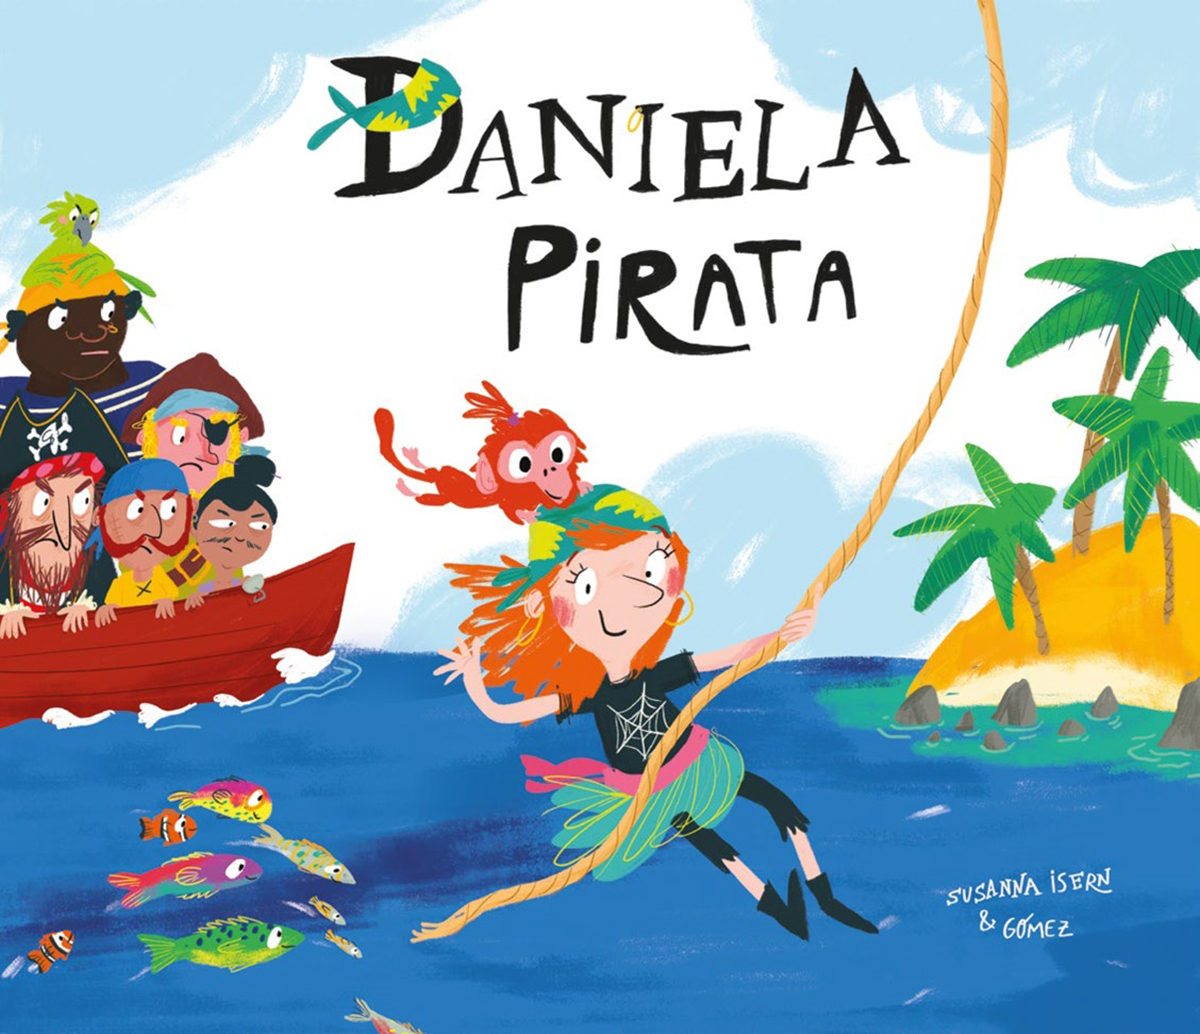 Daniela la Pirata